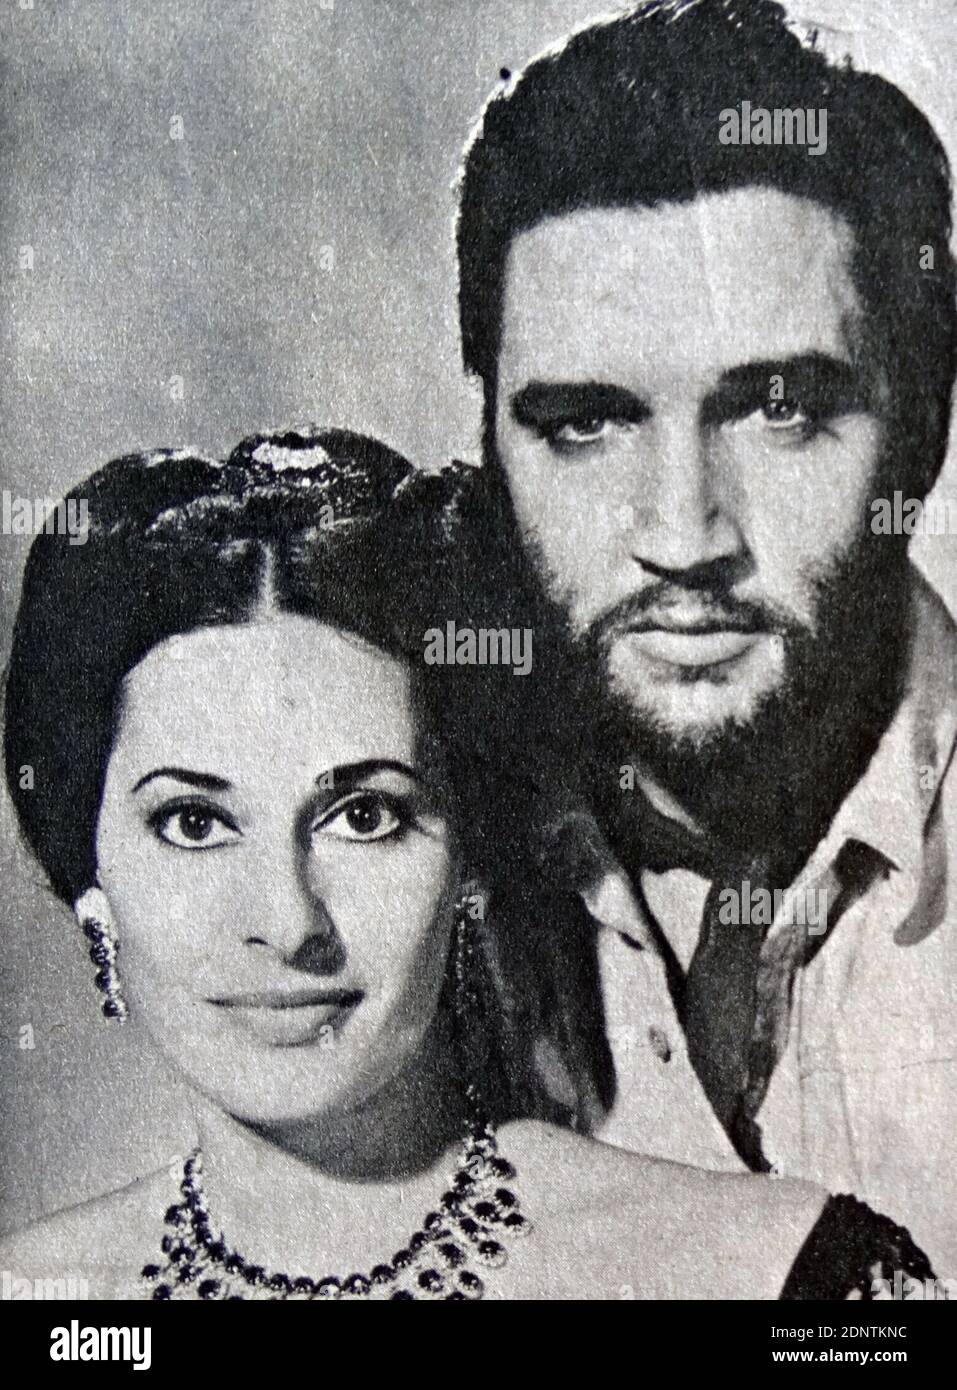 Filmstill von Elvis Presley (1935-1977) und Ina Balin (1937-1990) aus 'Charro!'. Stockfoto